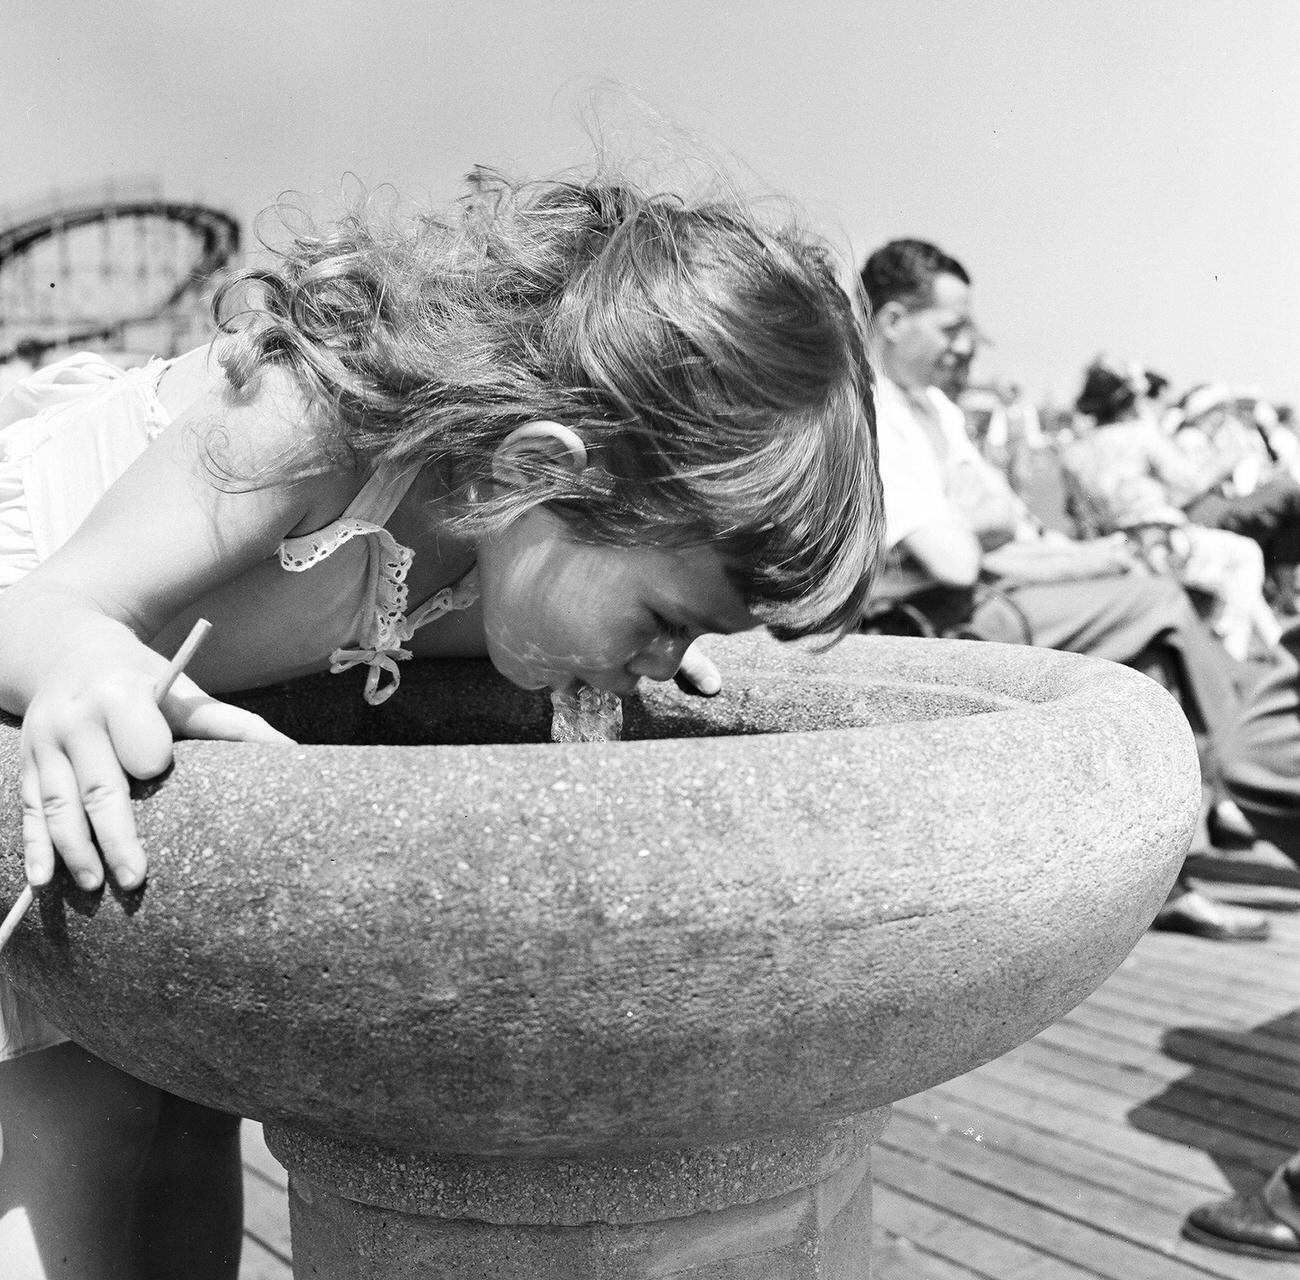 Girl Drinking From Water Fountain On Boardwalk, 1948